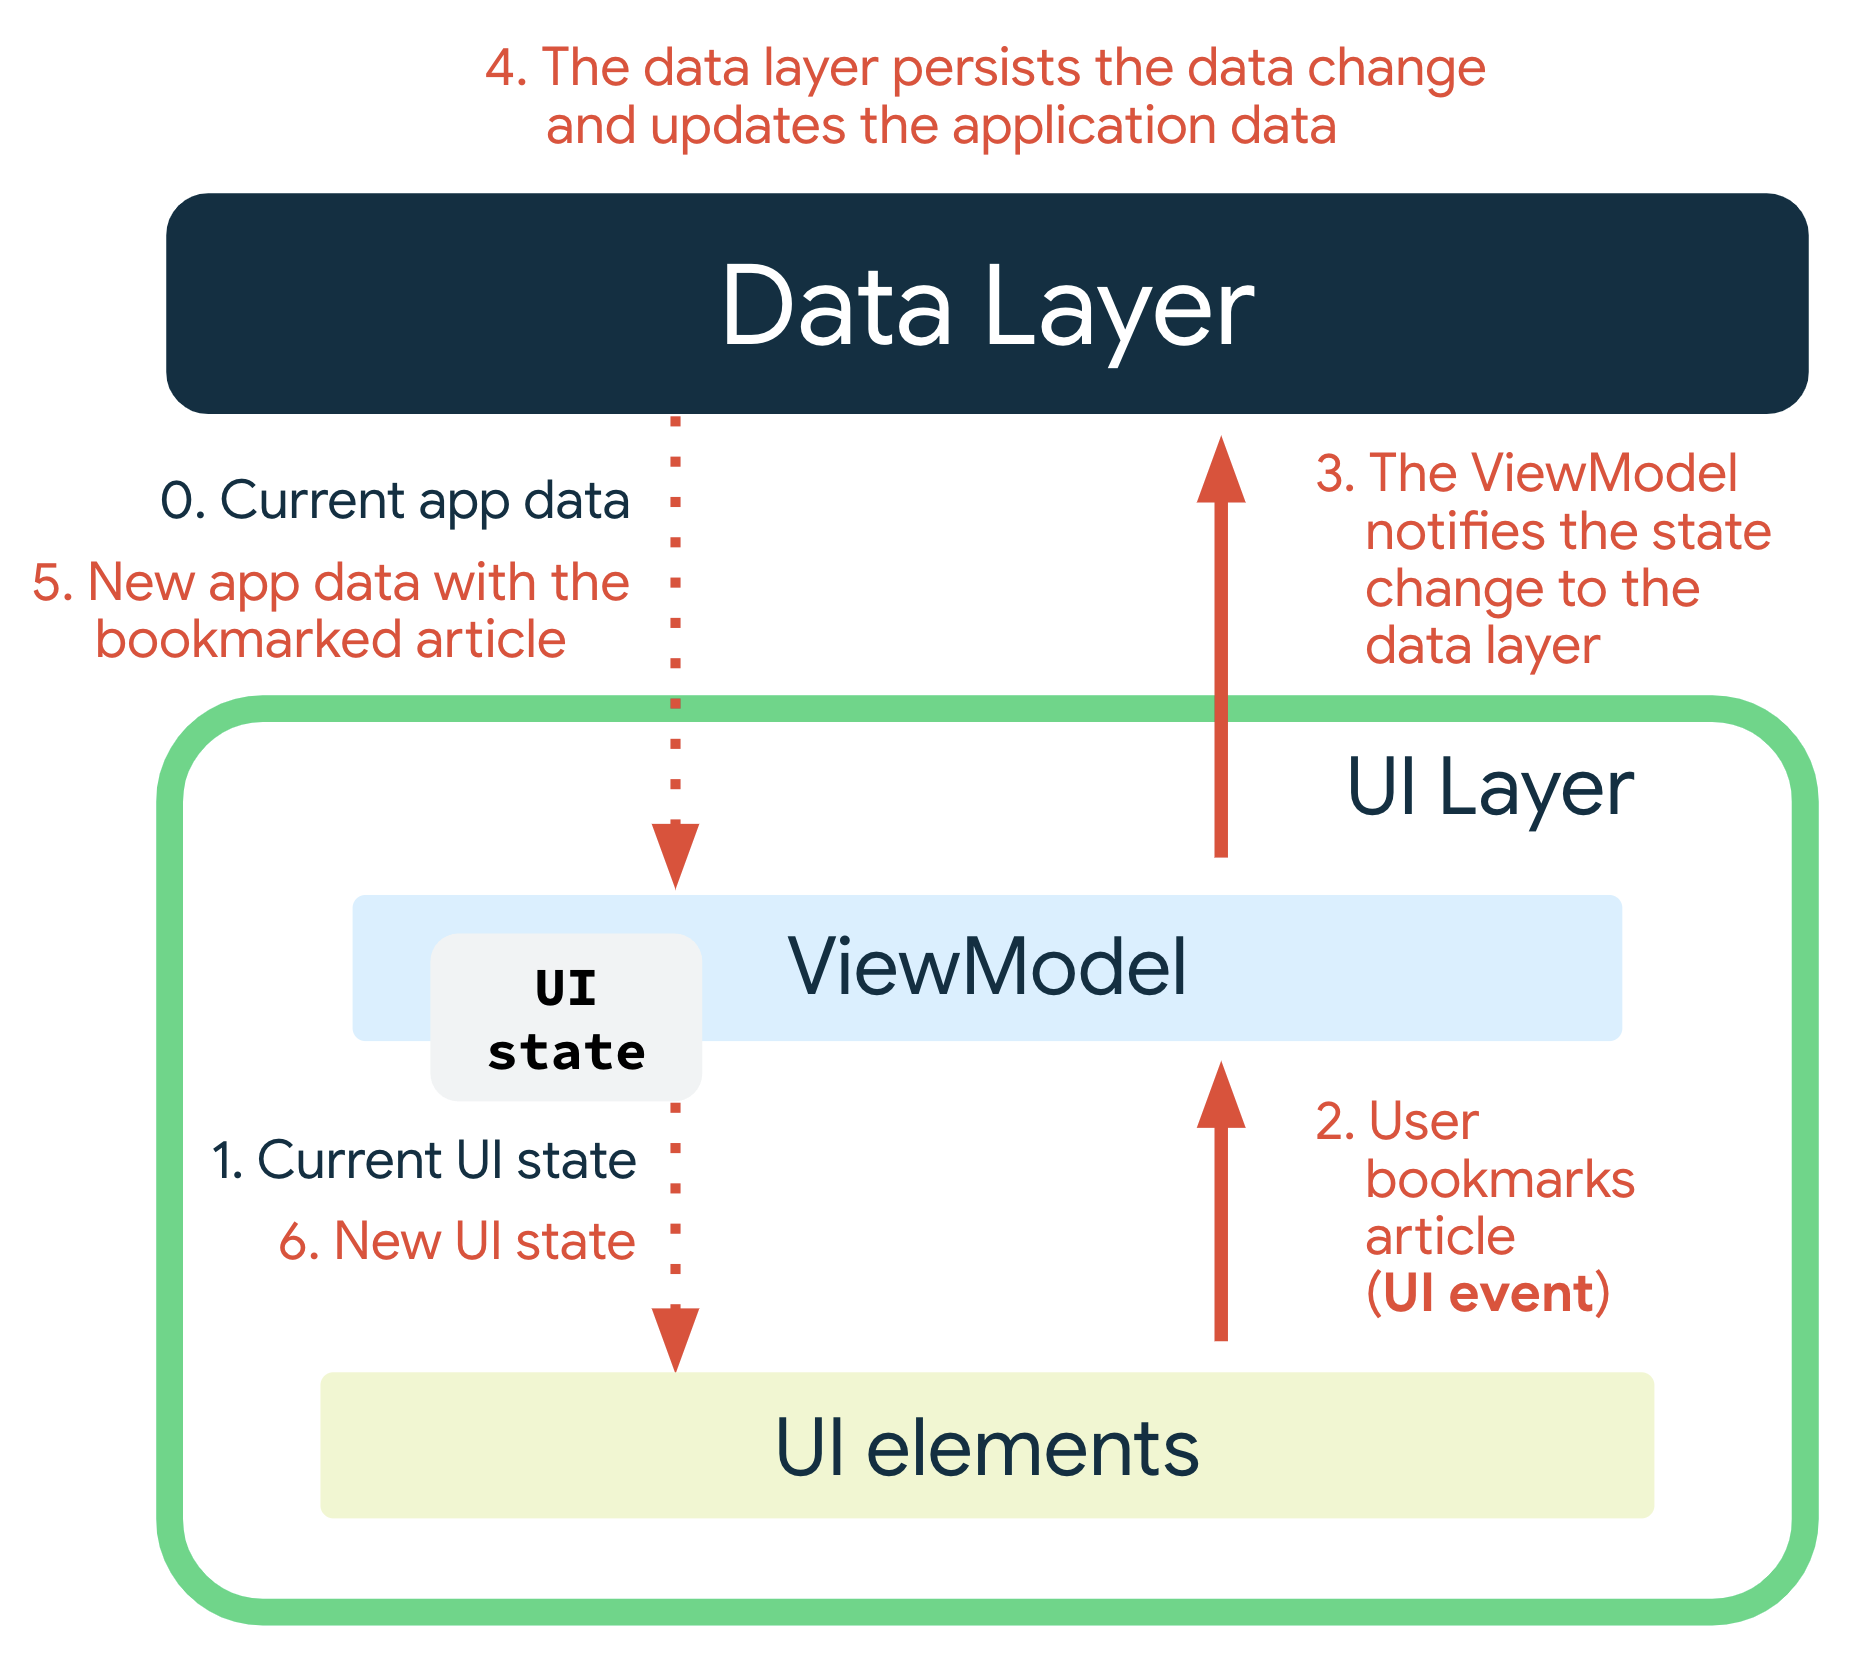 Um evento de IU ocorre quando o usuário adiciona uma matéria aos favoritos. A ViewModel
    notifica a camada de dados sobre a mudança de estado. A camada de dados mantém as
    mudanças de dados e atualiza os dados do app. Os novos dados do app com a
    matéria adicionada aos favoritos são transmitidos para a ViewModel, que produz o
    novo estado da IU e os transmite para os elementos dela para exibição.